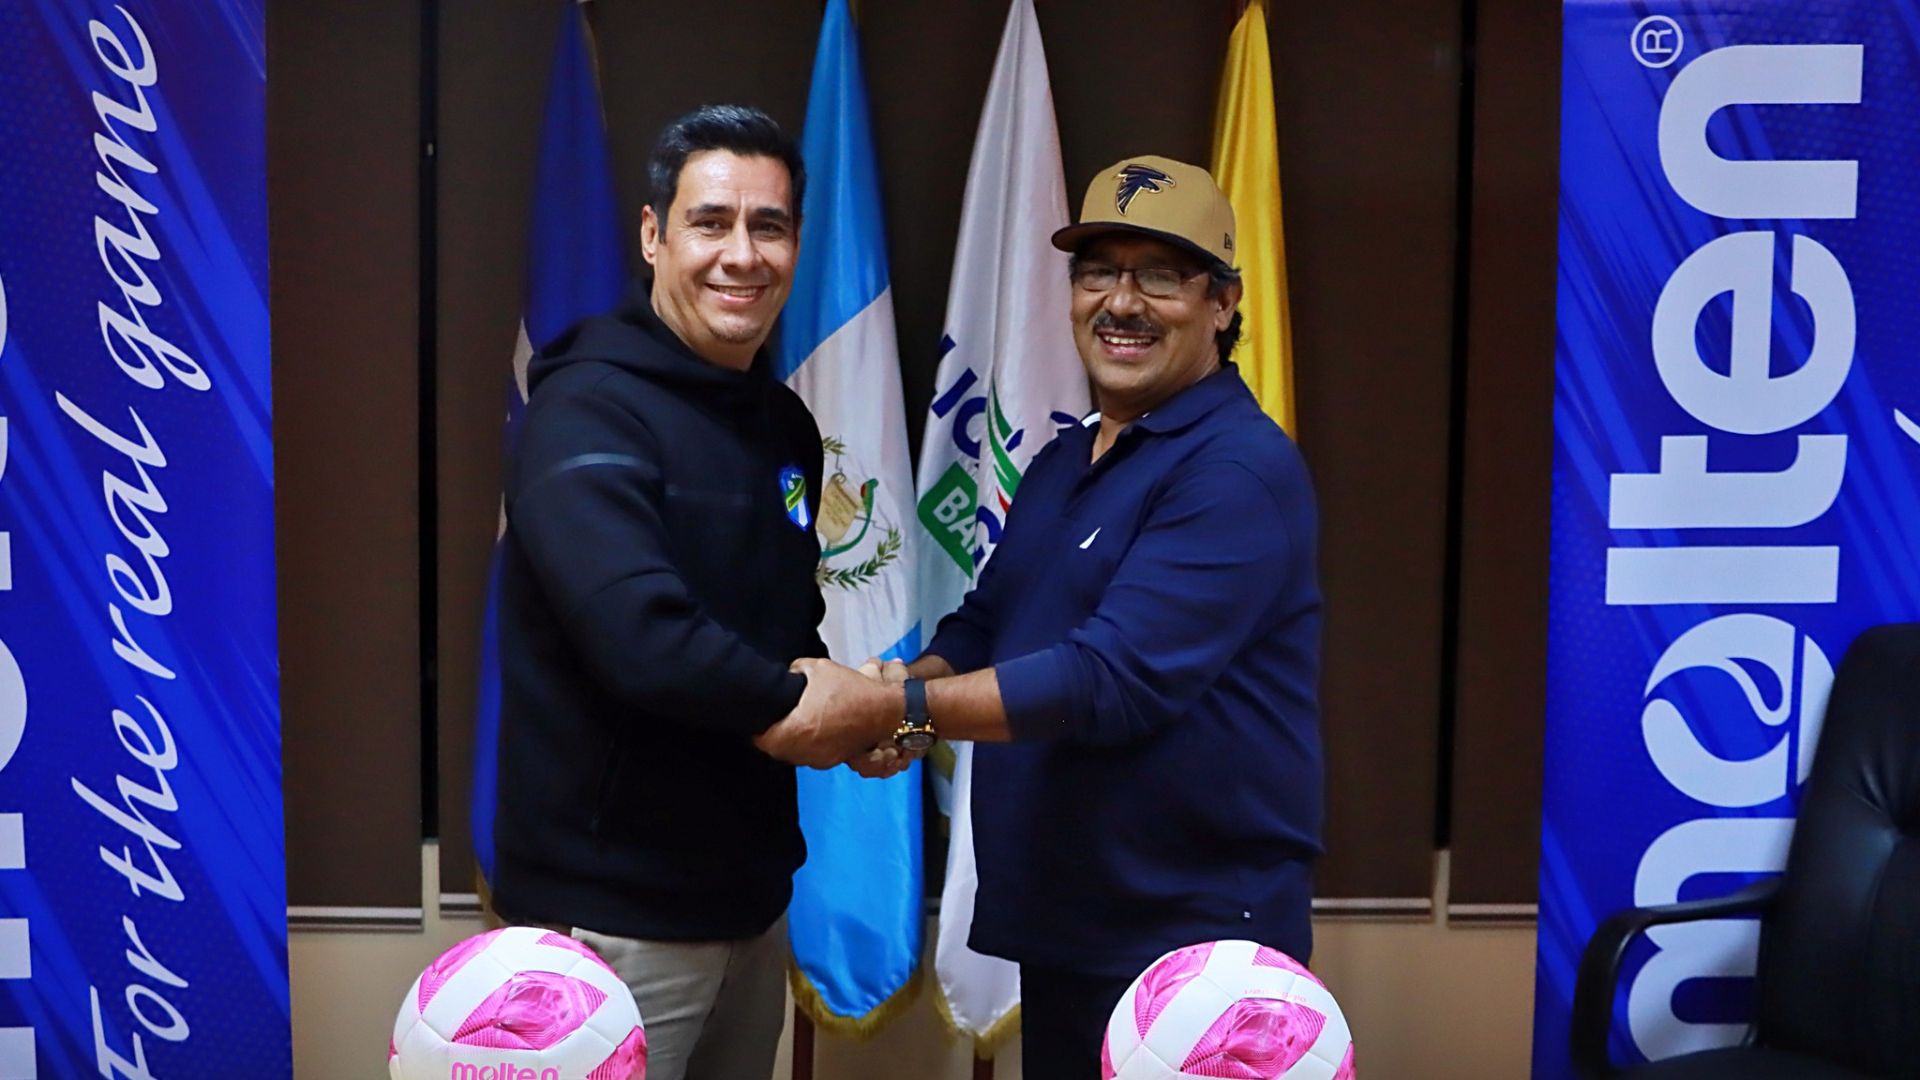 El Gerente Administrativo de Comunicaciones, Cristian Cáceres, se da la mano con el presidente del CD Guastatoya, Leonardo Moscoso. (Foto Prensa Libre: @LigaGuateB)